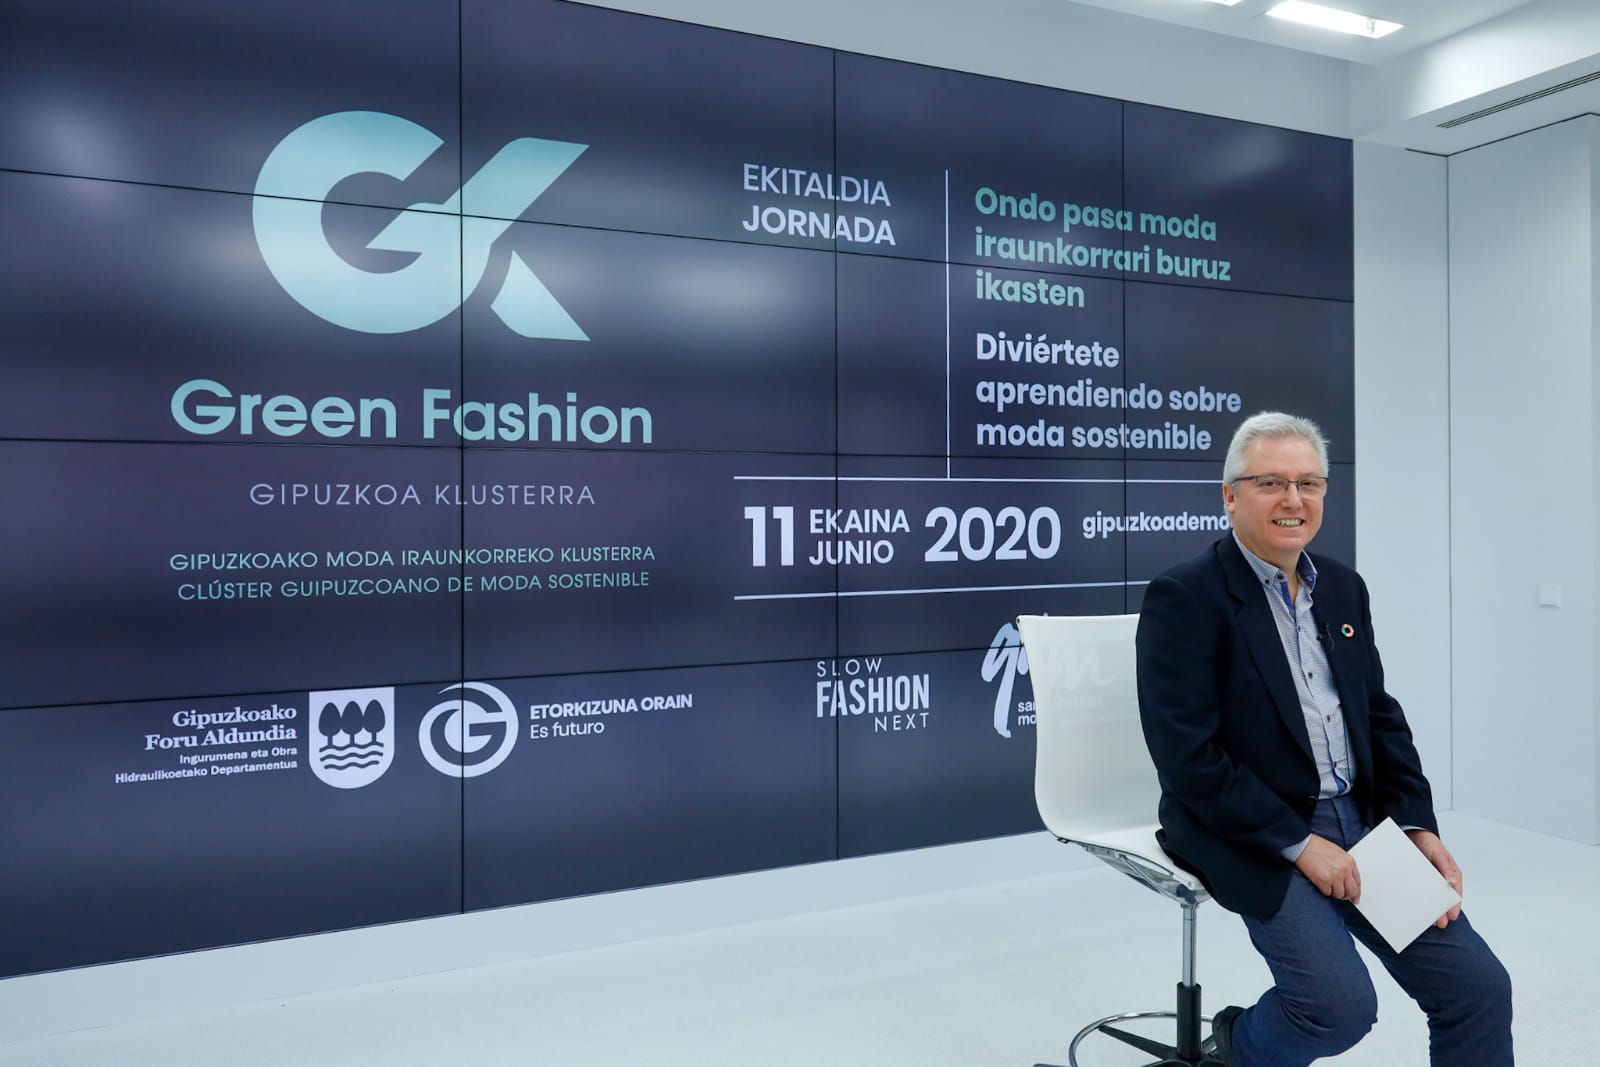 GK Green Fashion reúne a los líderes de Moda Sostenible...